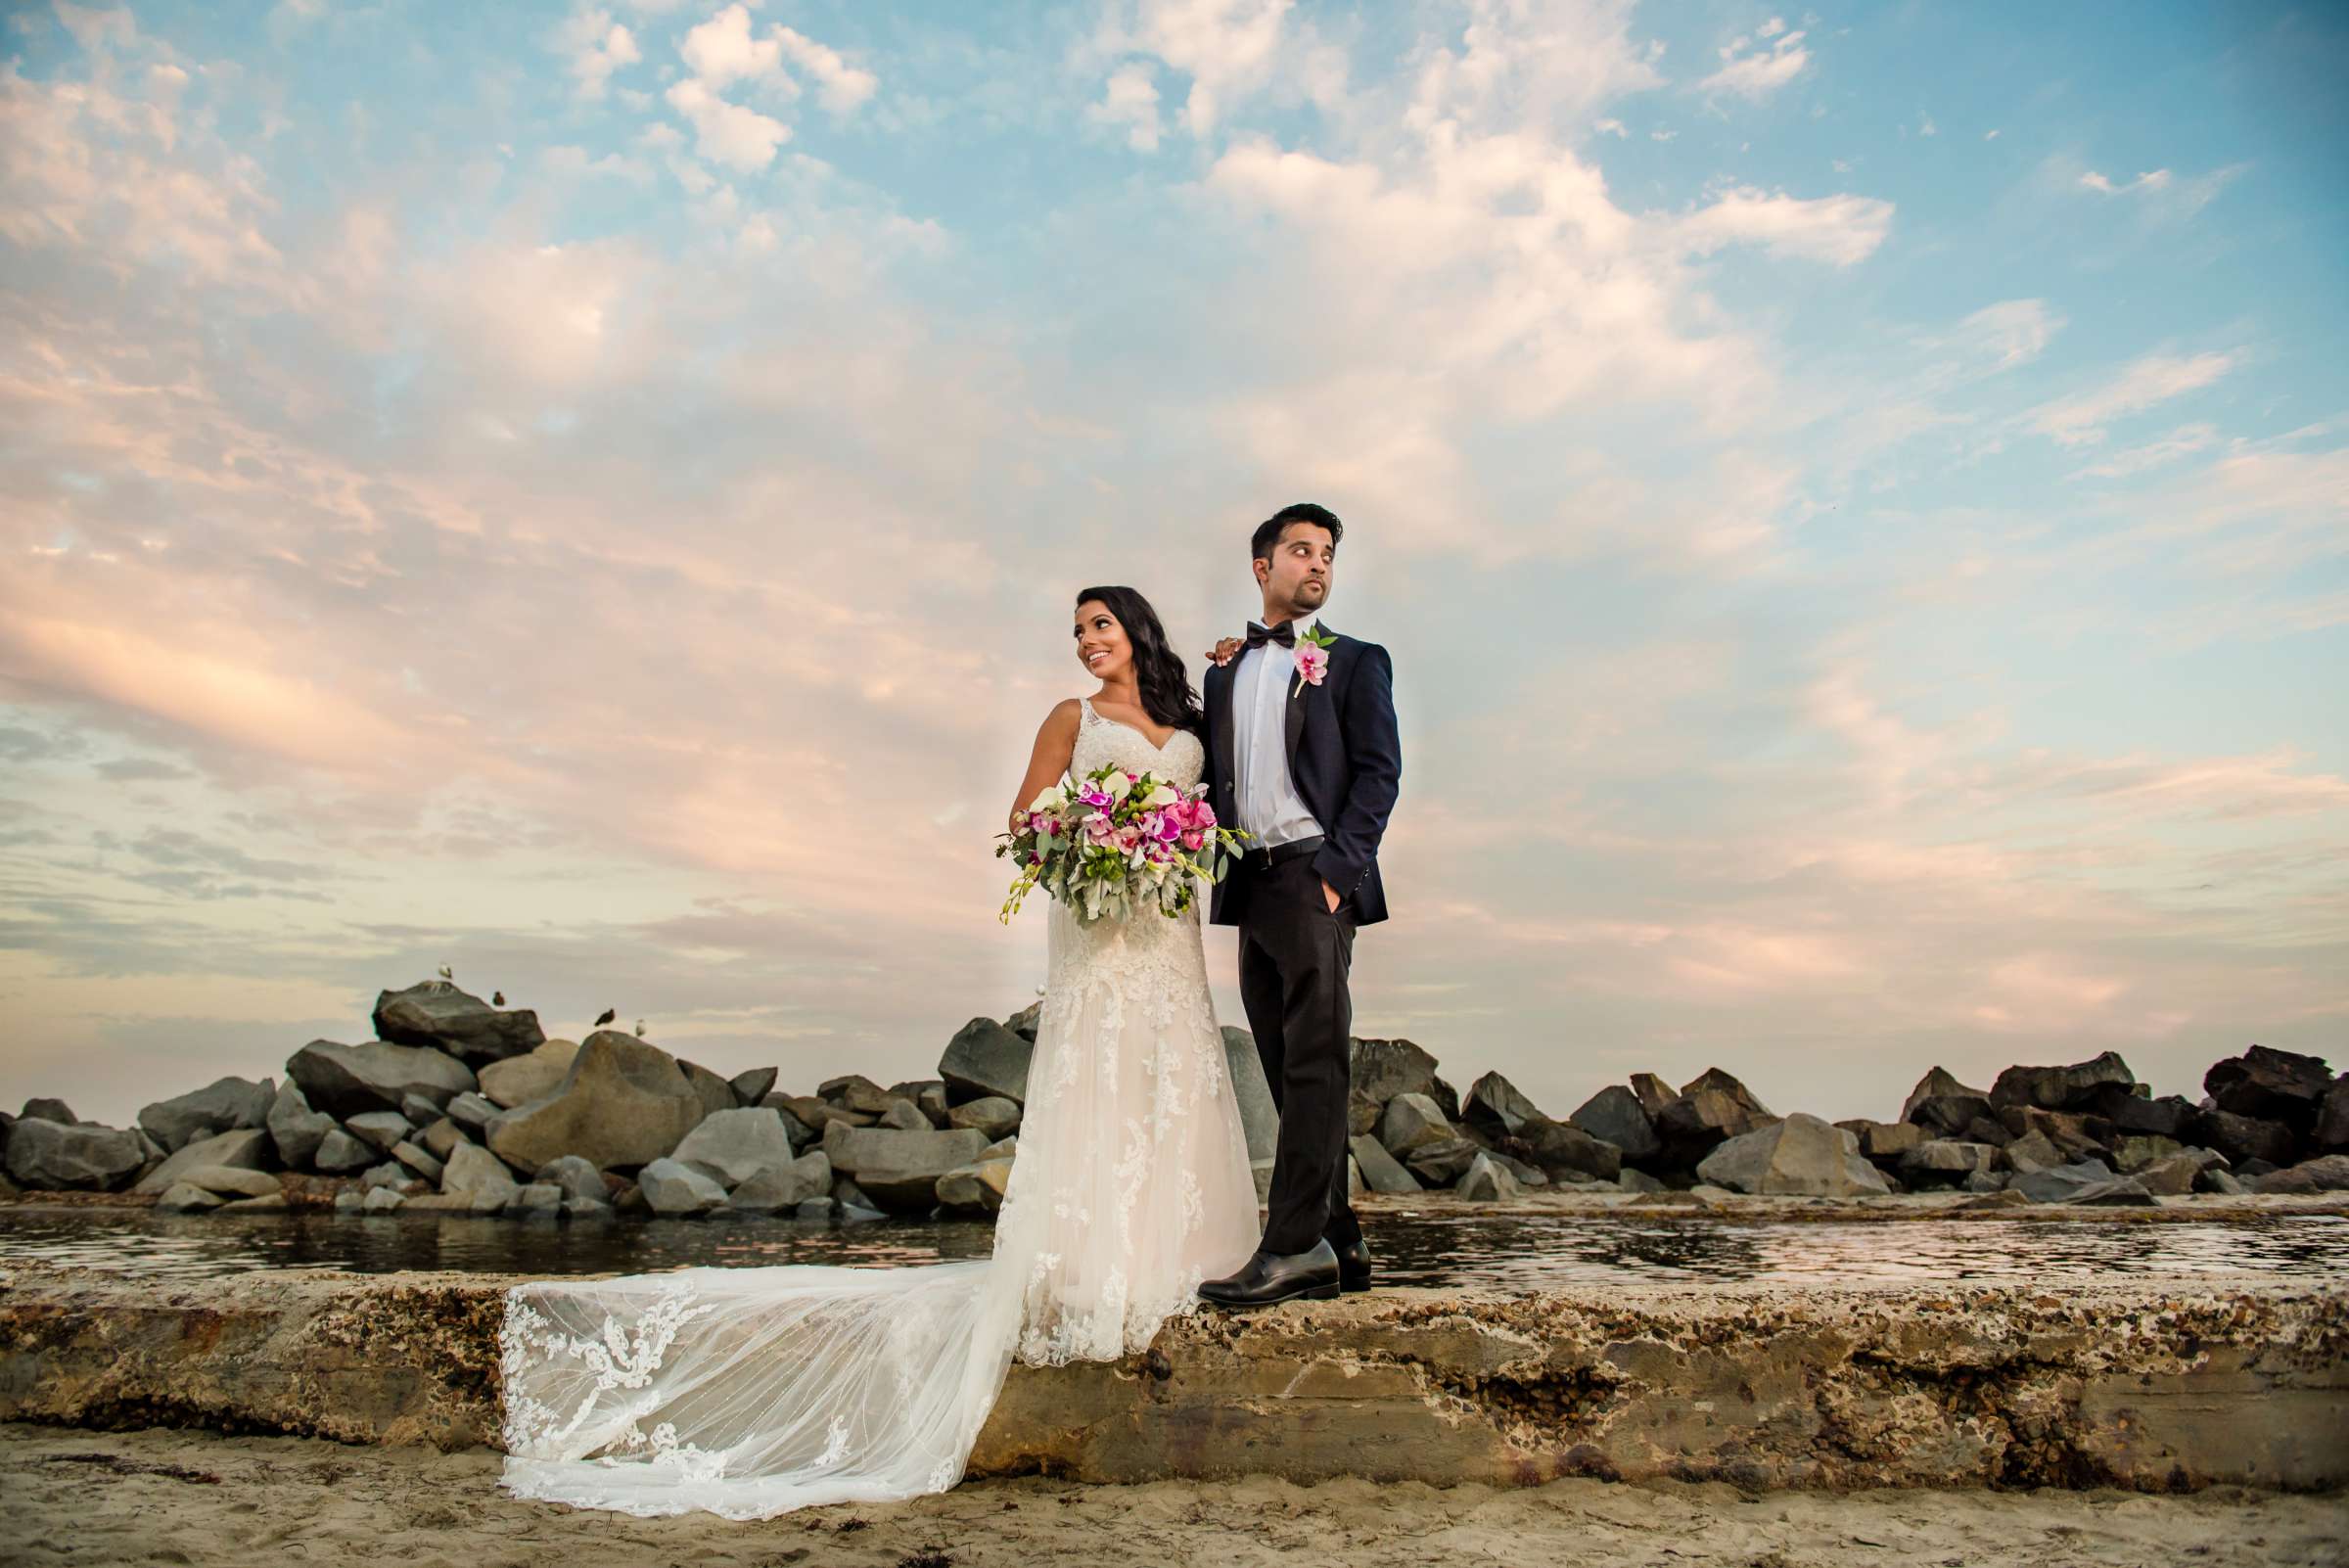 Hotel Del Coronado Wedding, Sabrina and Gehaan Wedding Photo #409061 by True Photography